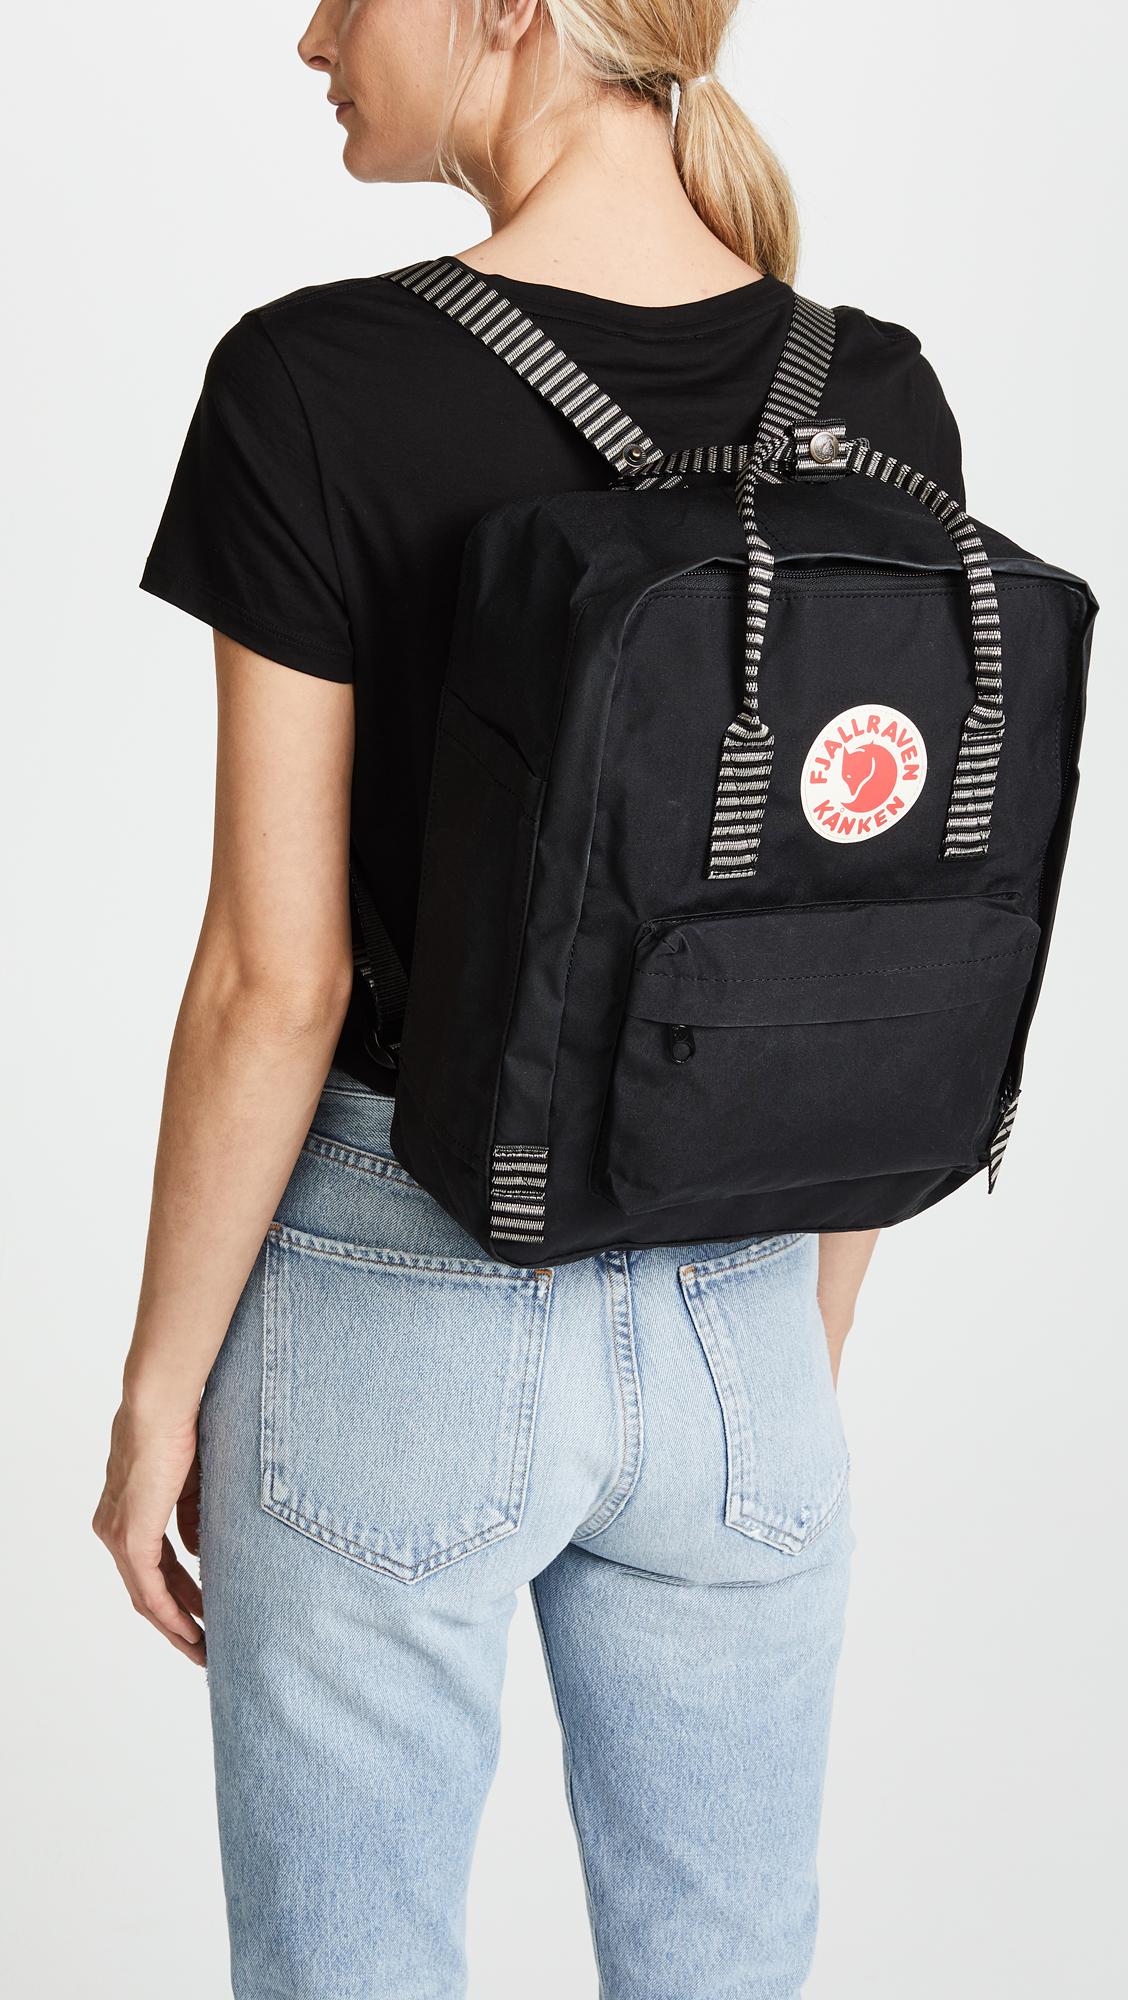 fjallraven mini kanken black backpack with contrast stripes